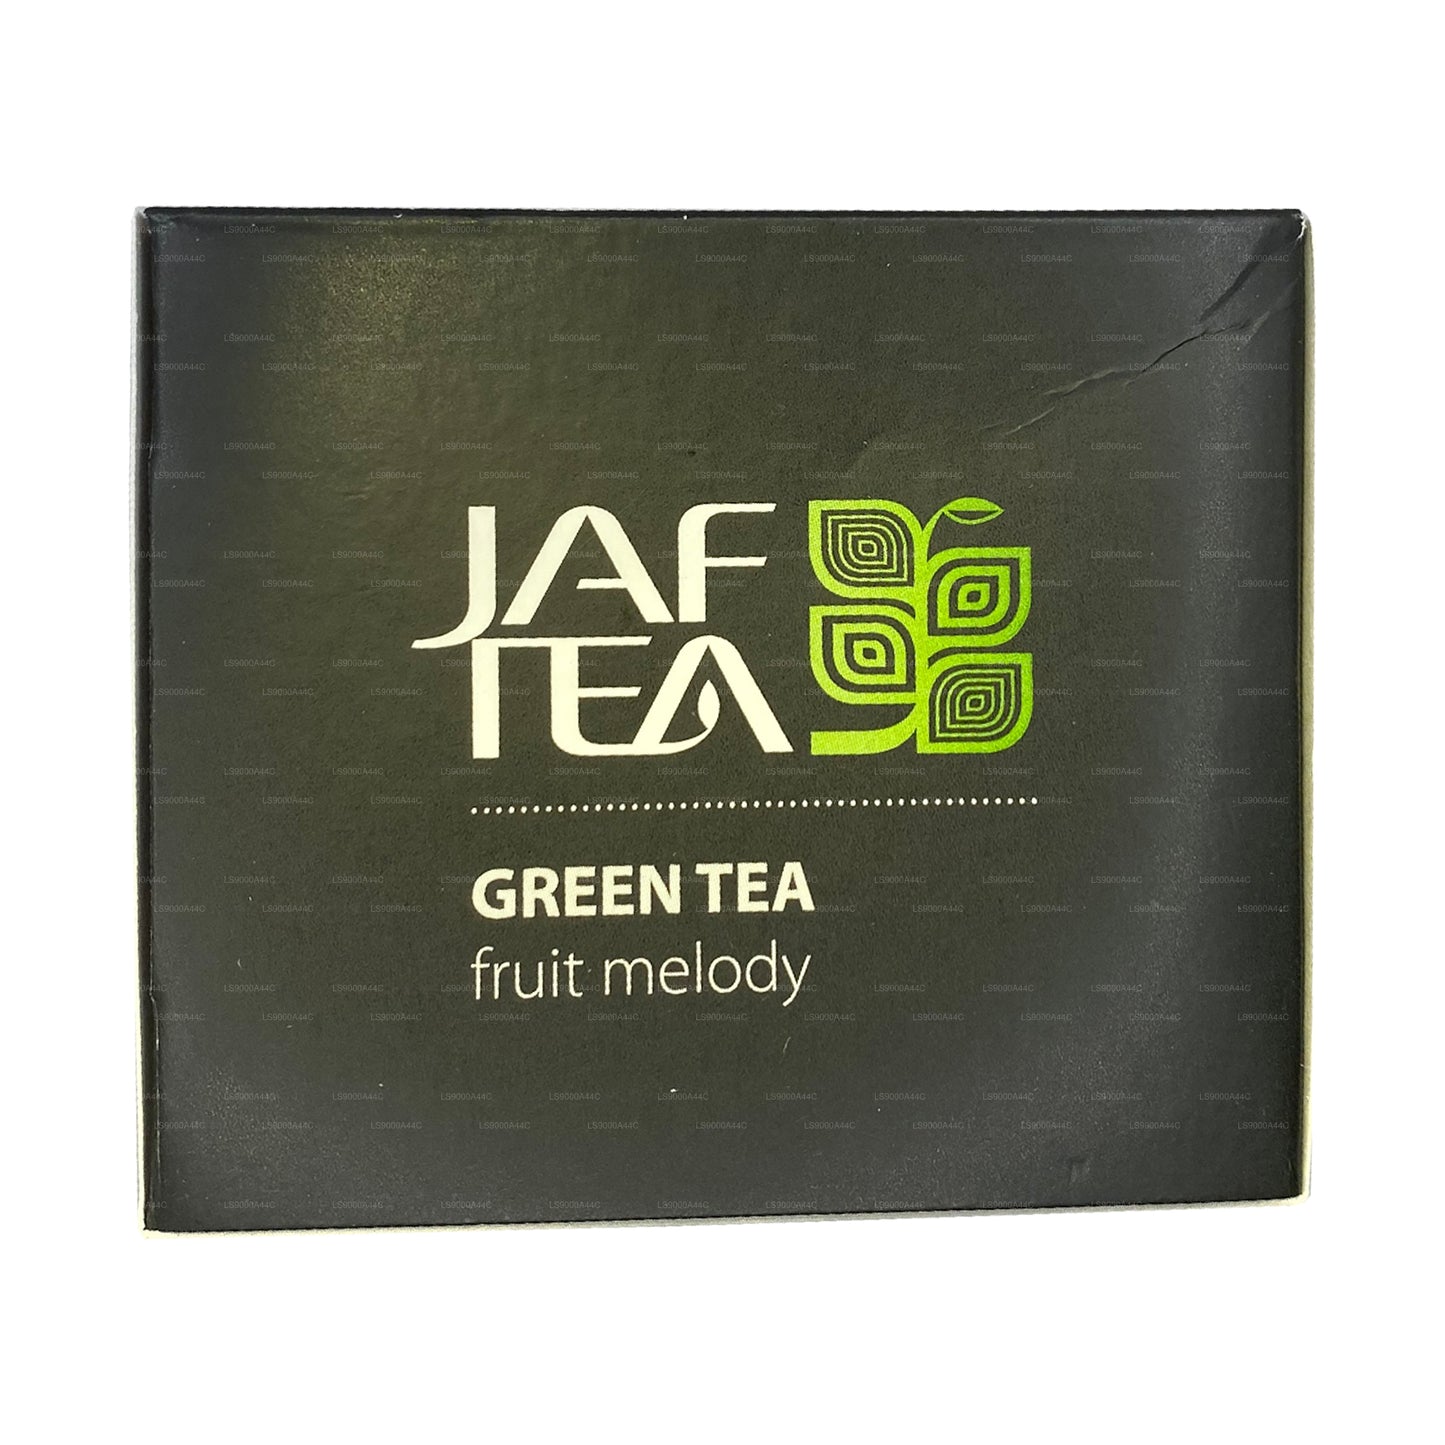 Jaf Tea Pure Fruits Collection Black Thé Fruit Melody (30 g) 20 sachets de thé